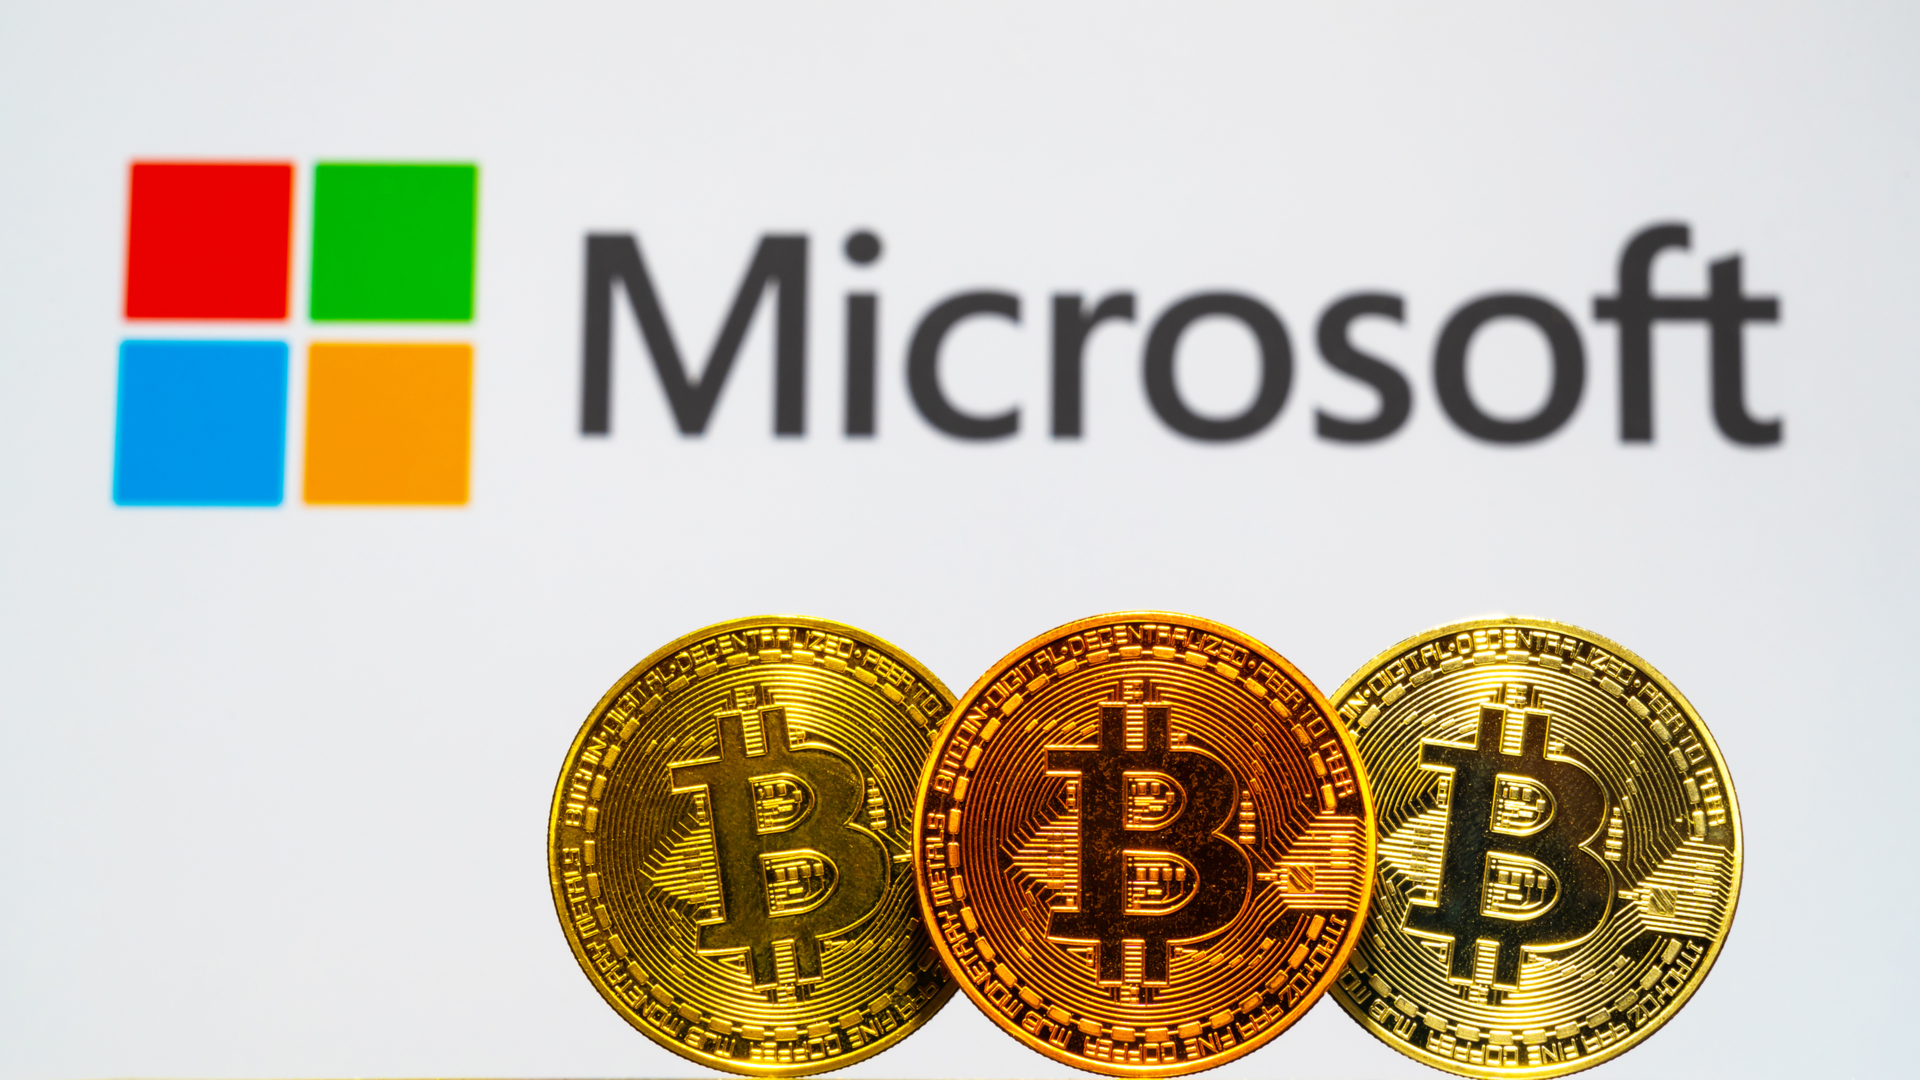 Vazam imagens de possível carteira de criptomoedas da Microsoft, confira - Livecoins